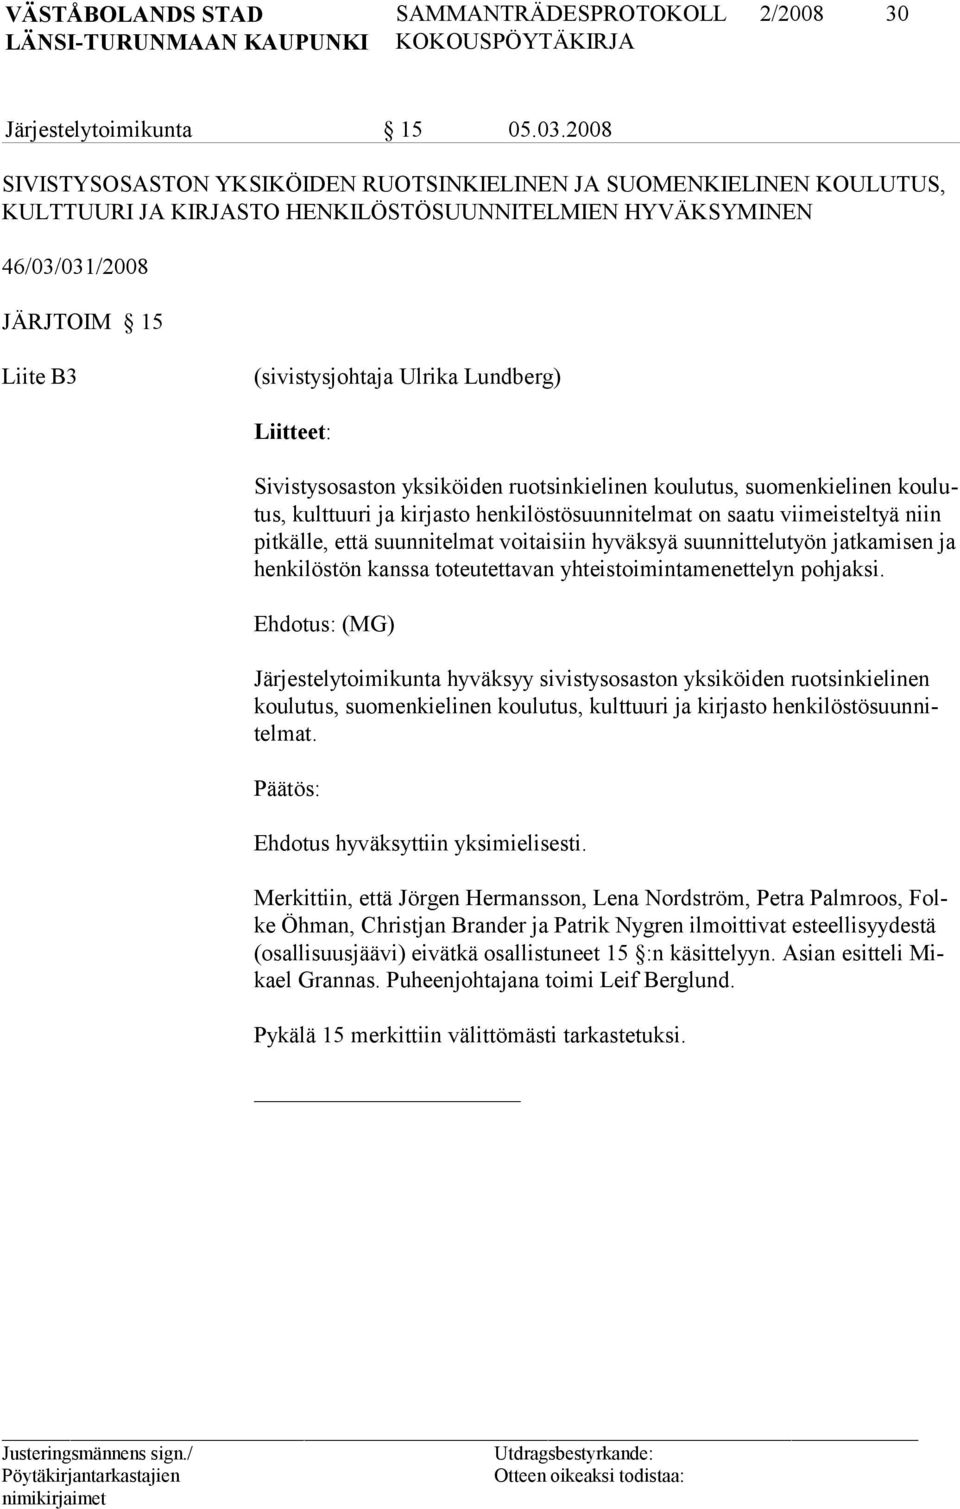 Lundberg) Liitteet: Sivistysosaston yksiköiden ruotsinkielinen koulutus, suomenkielinen koulutus, kulttuuri ja kirjasto henkilöstösuunnitelmat on saatu viimeisteltyä niin pitkälle, että suunnitelmat